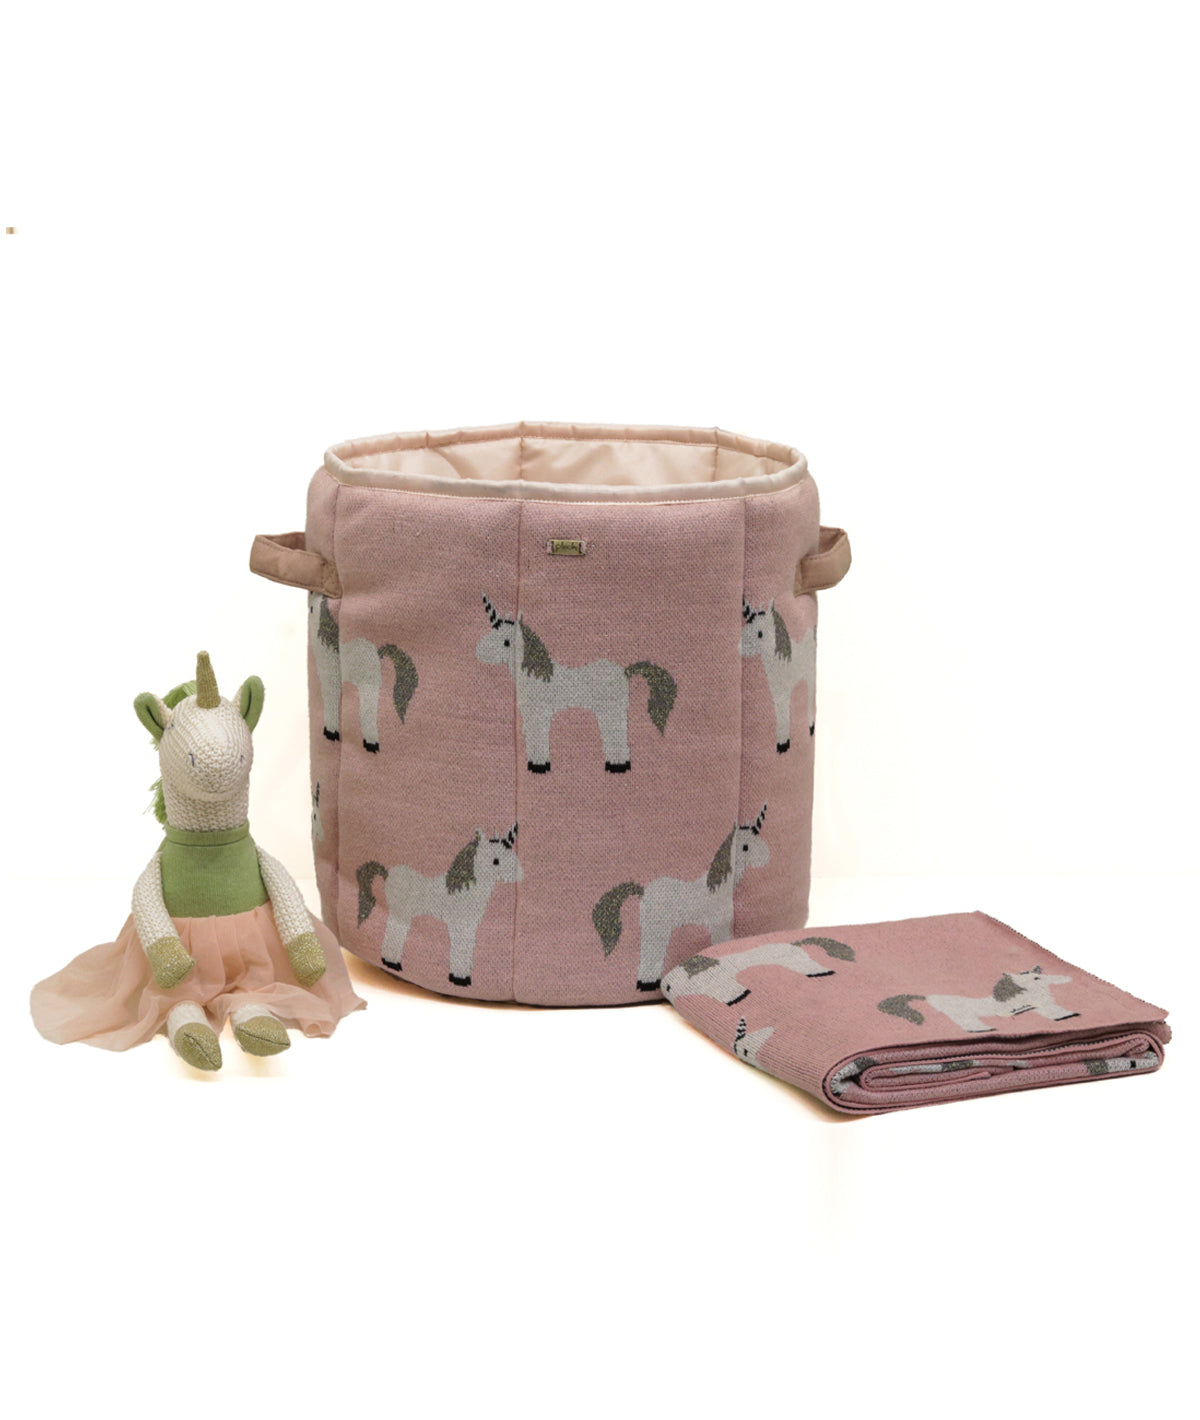 My Little Unicorn Bubblegum Pink Cotton Knitted Storage Basket for Kids Room / Nursery Decor